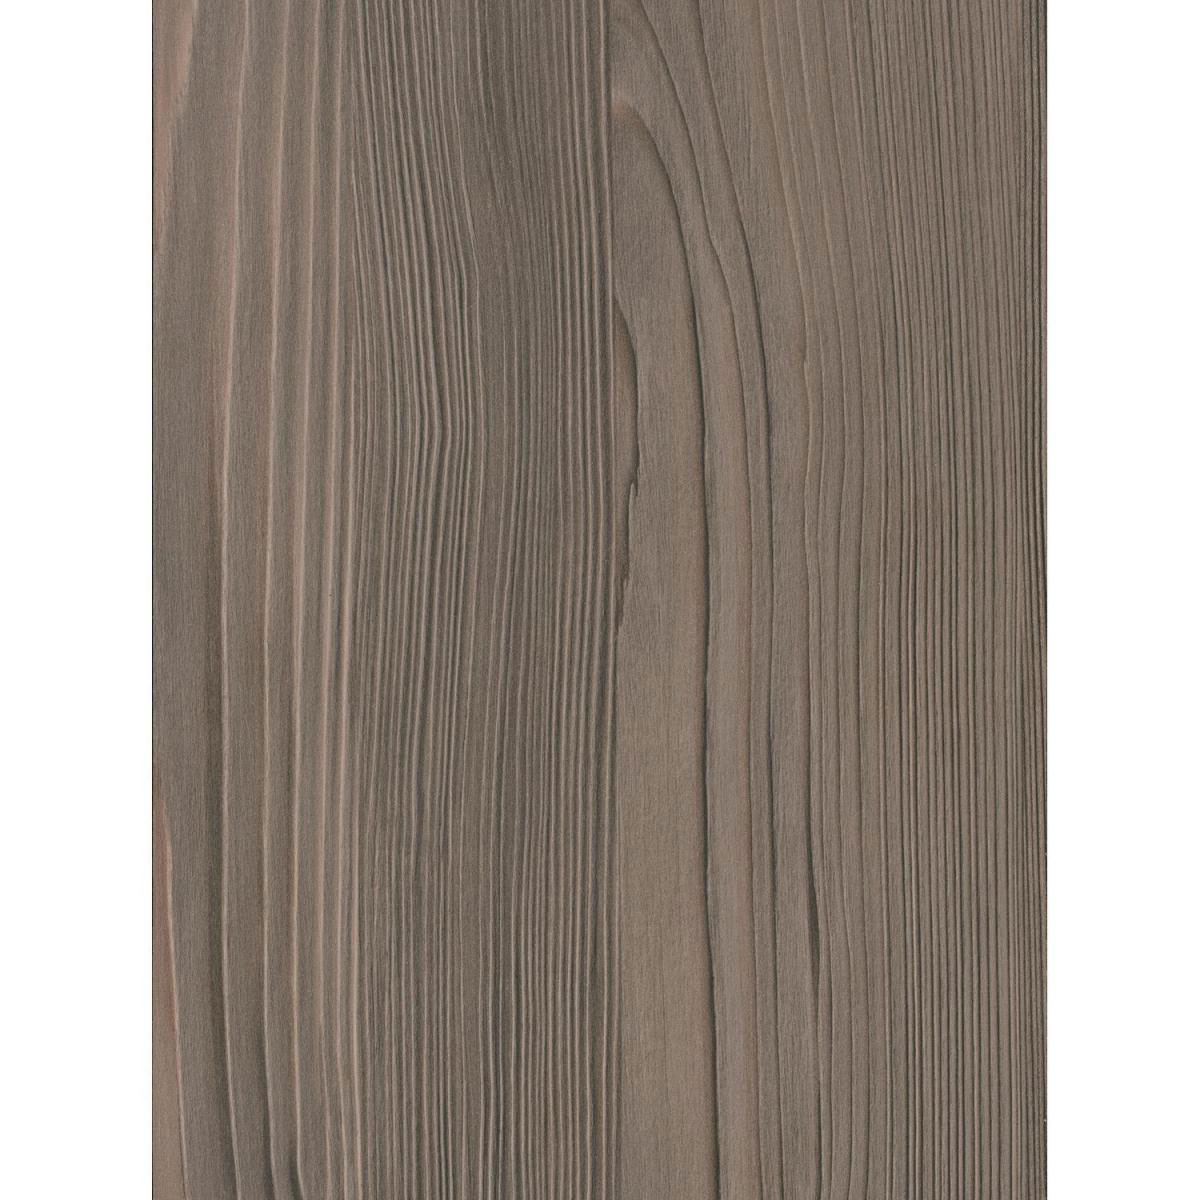 Wandanschlussprofil Plus „kupferesche graubraun“, 3000x20x30 mm